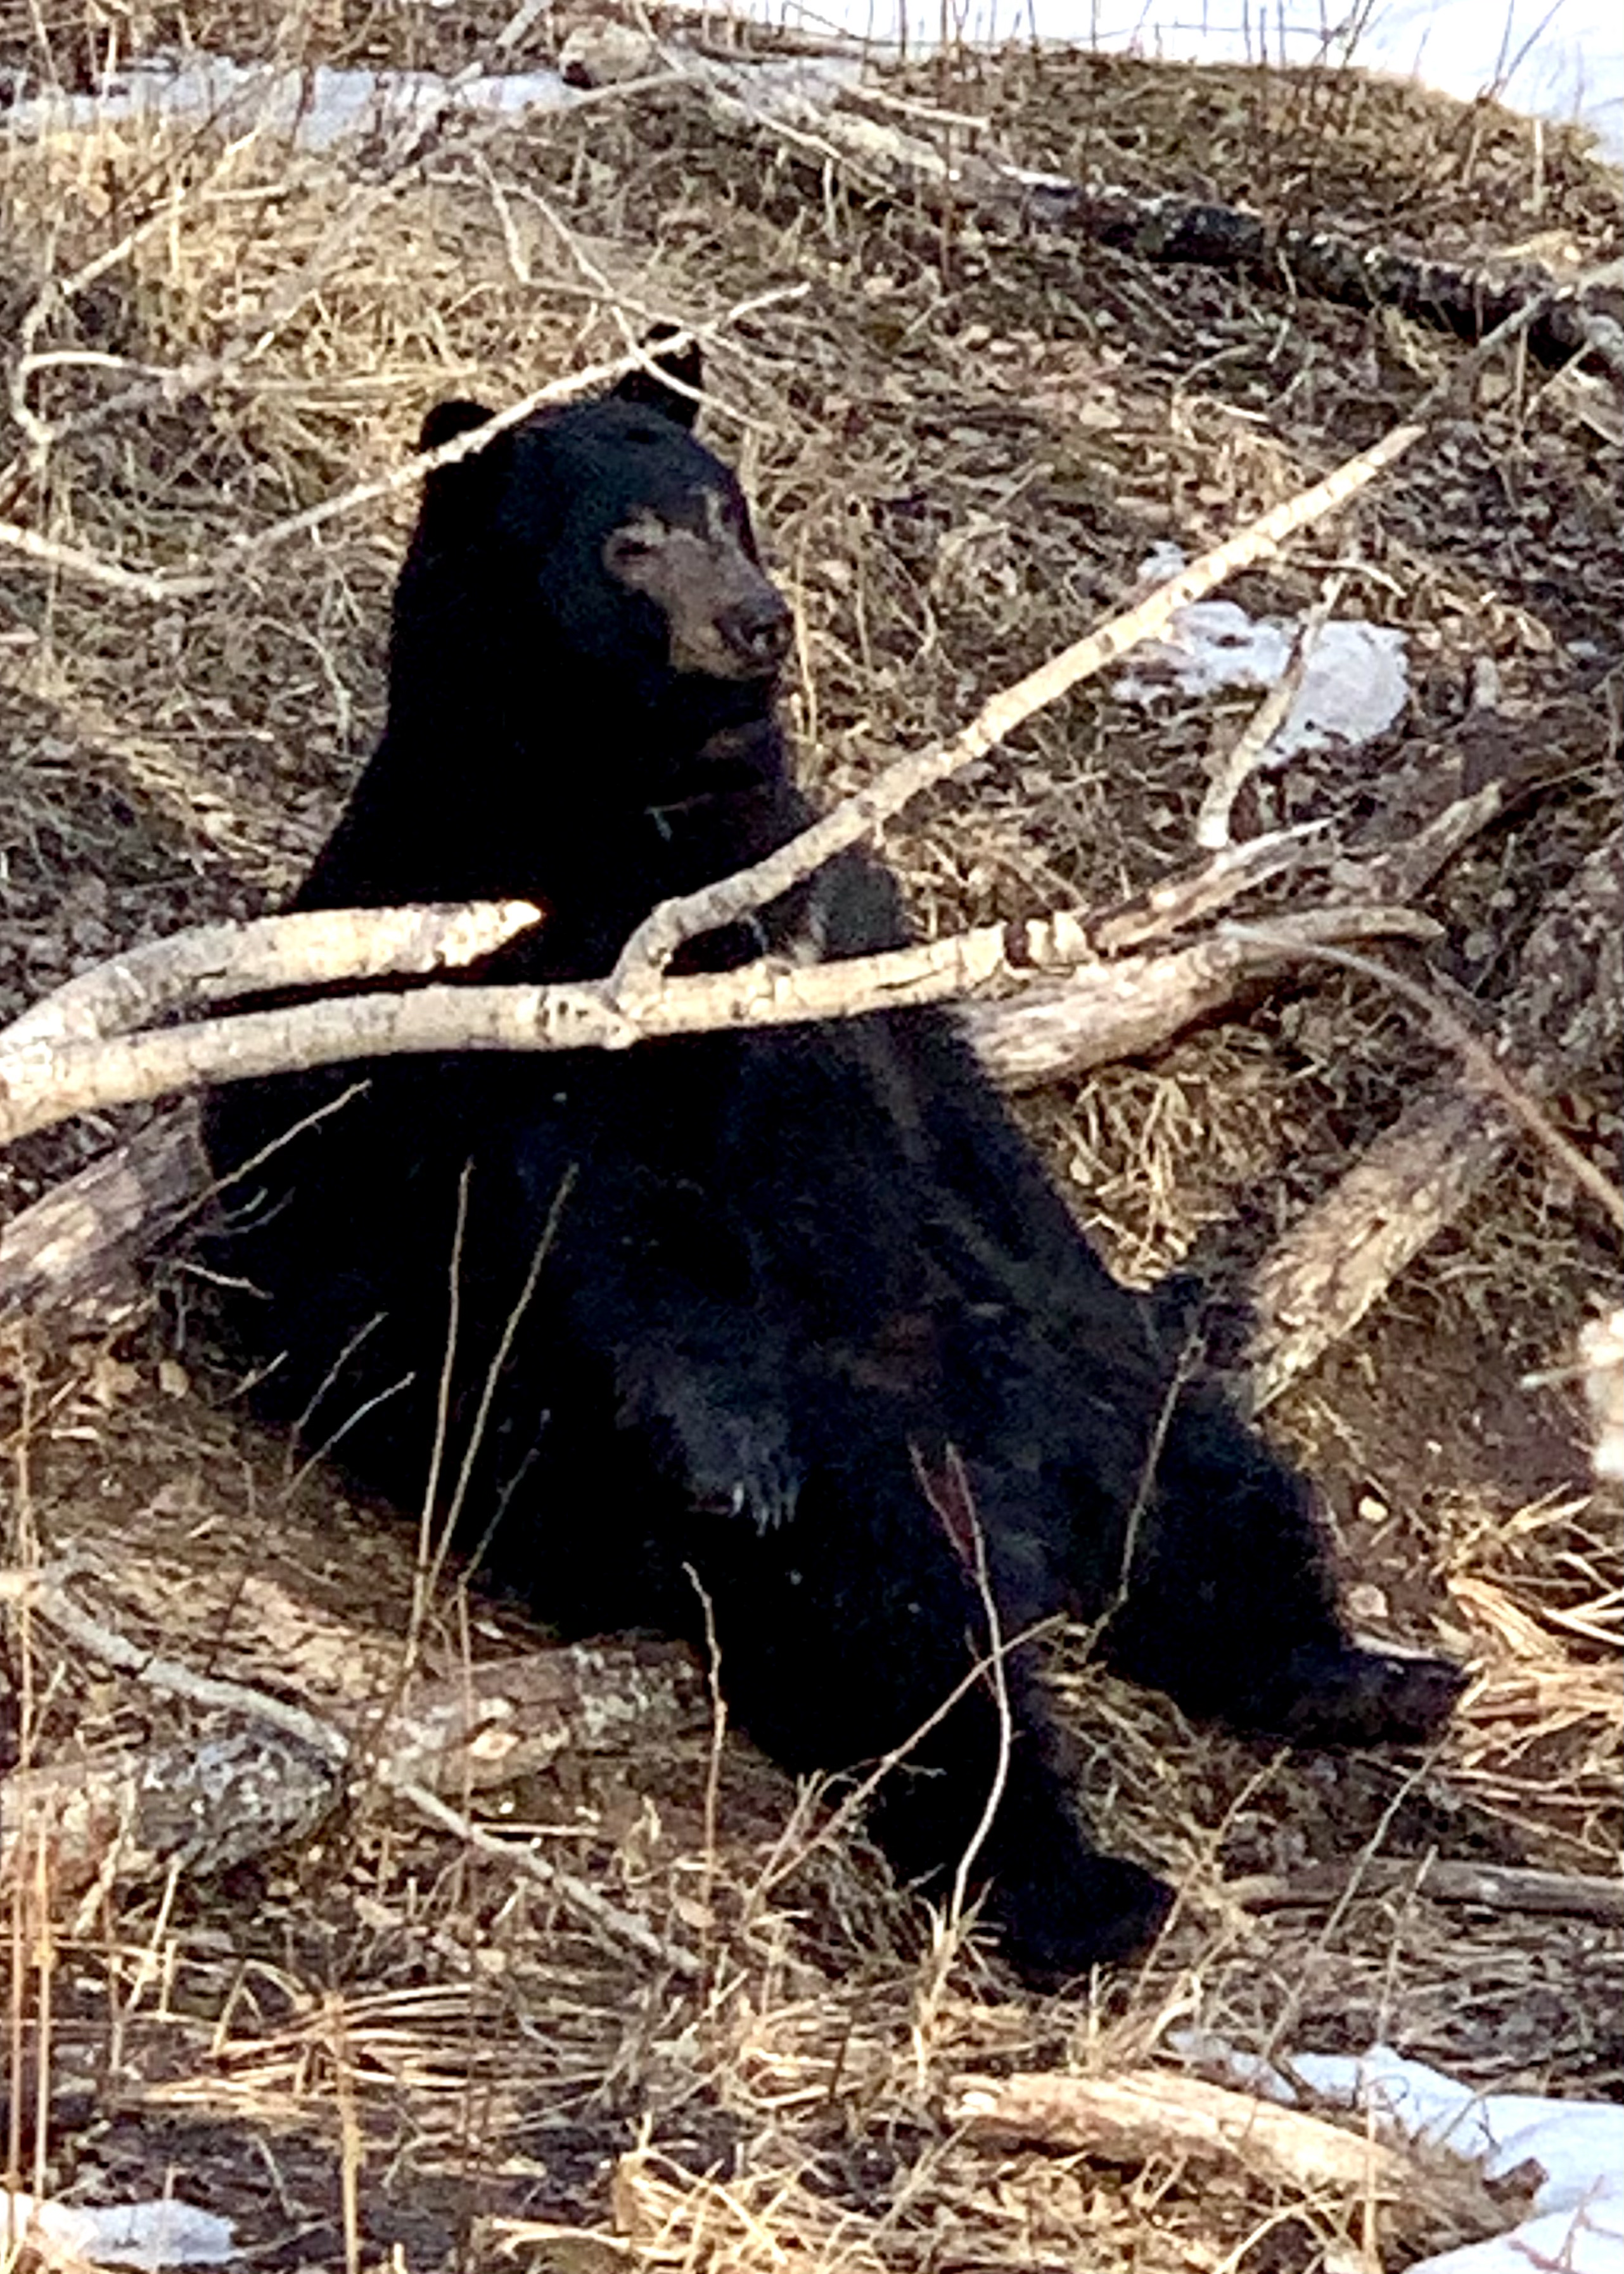 Our neighborhood bear…